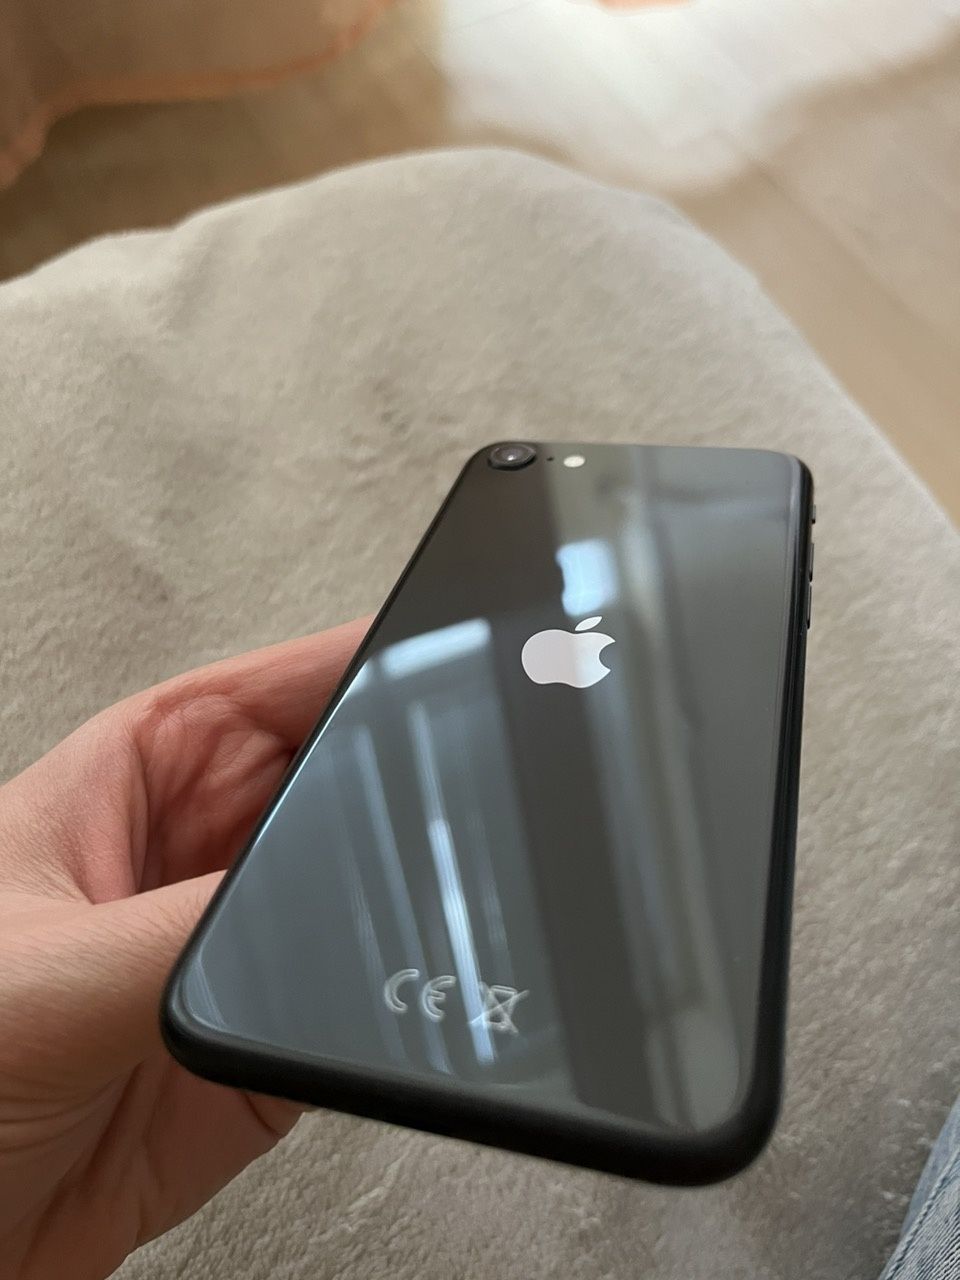 iPhone SE 2020
64 GB